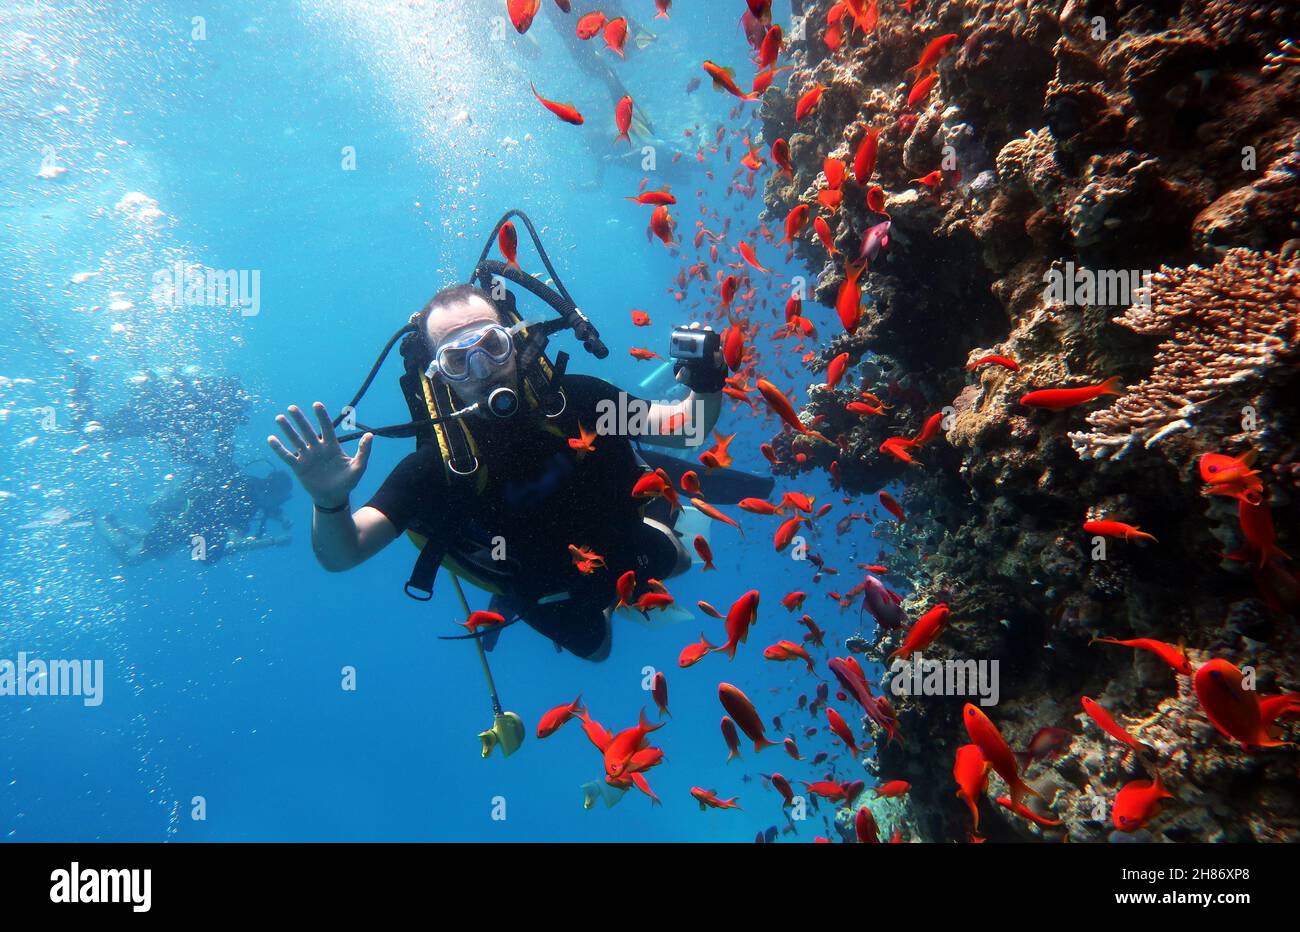 Tauchen im Roten Meer in Ägypten, wunderschönes Korallenriff mit Hunderten von Korallenfischen. Taucher, die das Riff unter Wasser Filmen, extremer Sporthintergrund Stockfoto